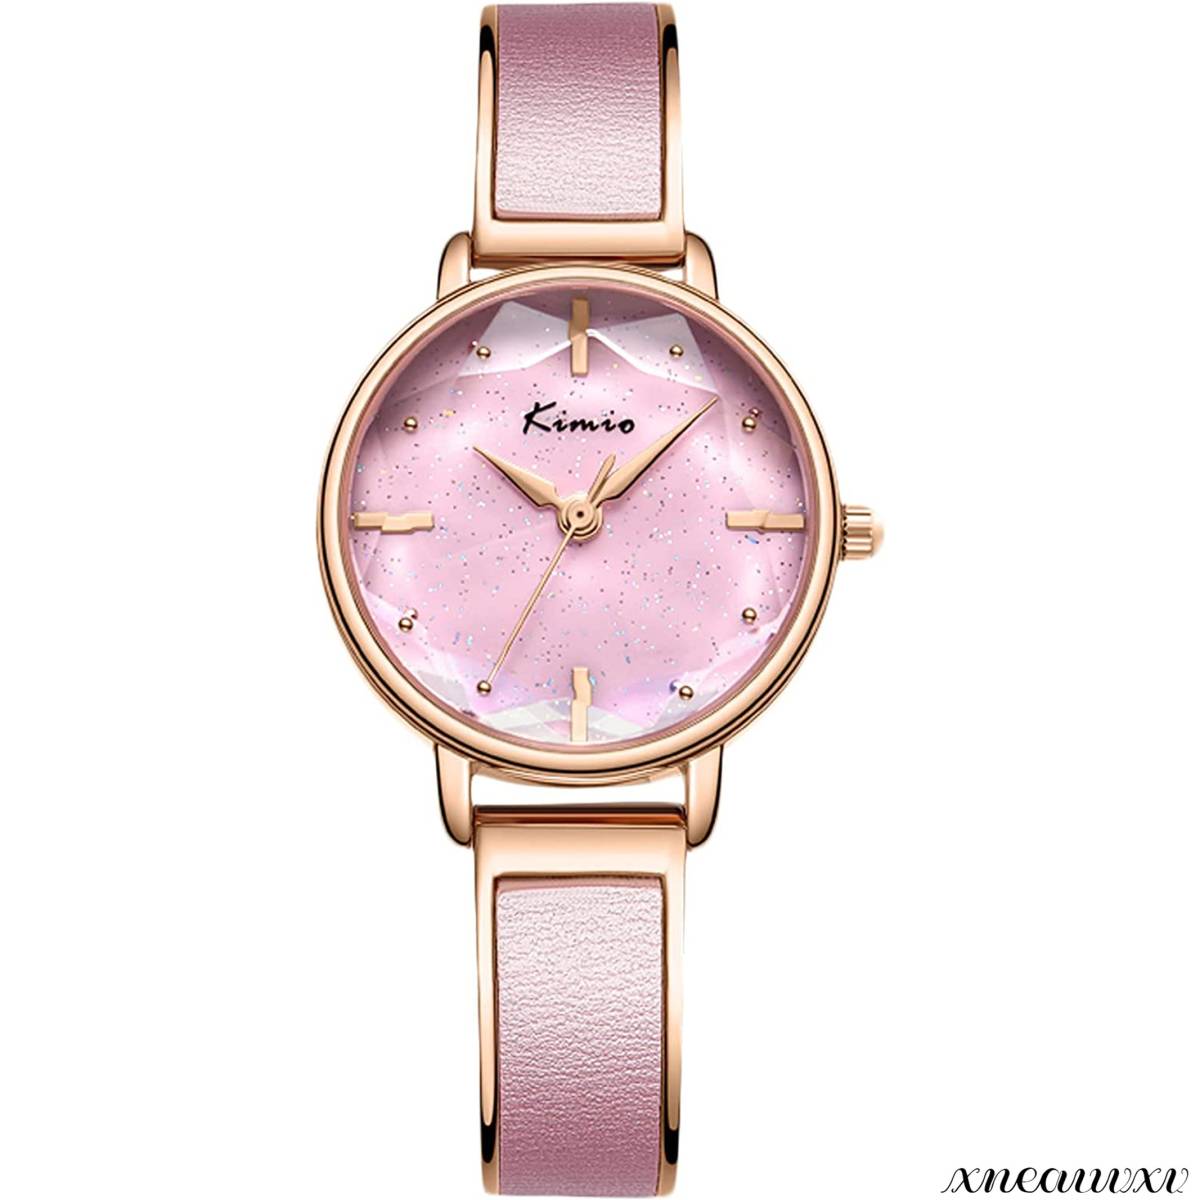 立体鏡面 腕時計 星の光 ブレスレット式 ピンク レディース クオーツ 高品質 おしゃれ アナログ 女性 腕時計 ウォッチ プレゼント